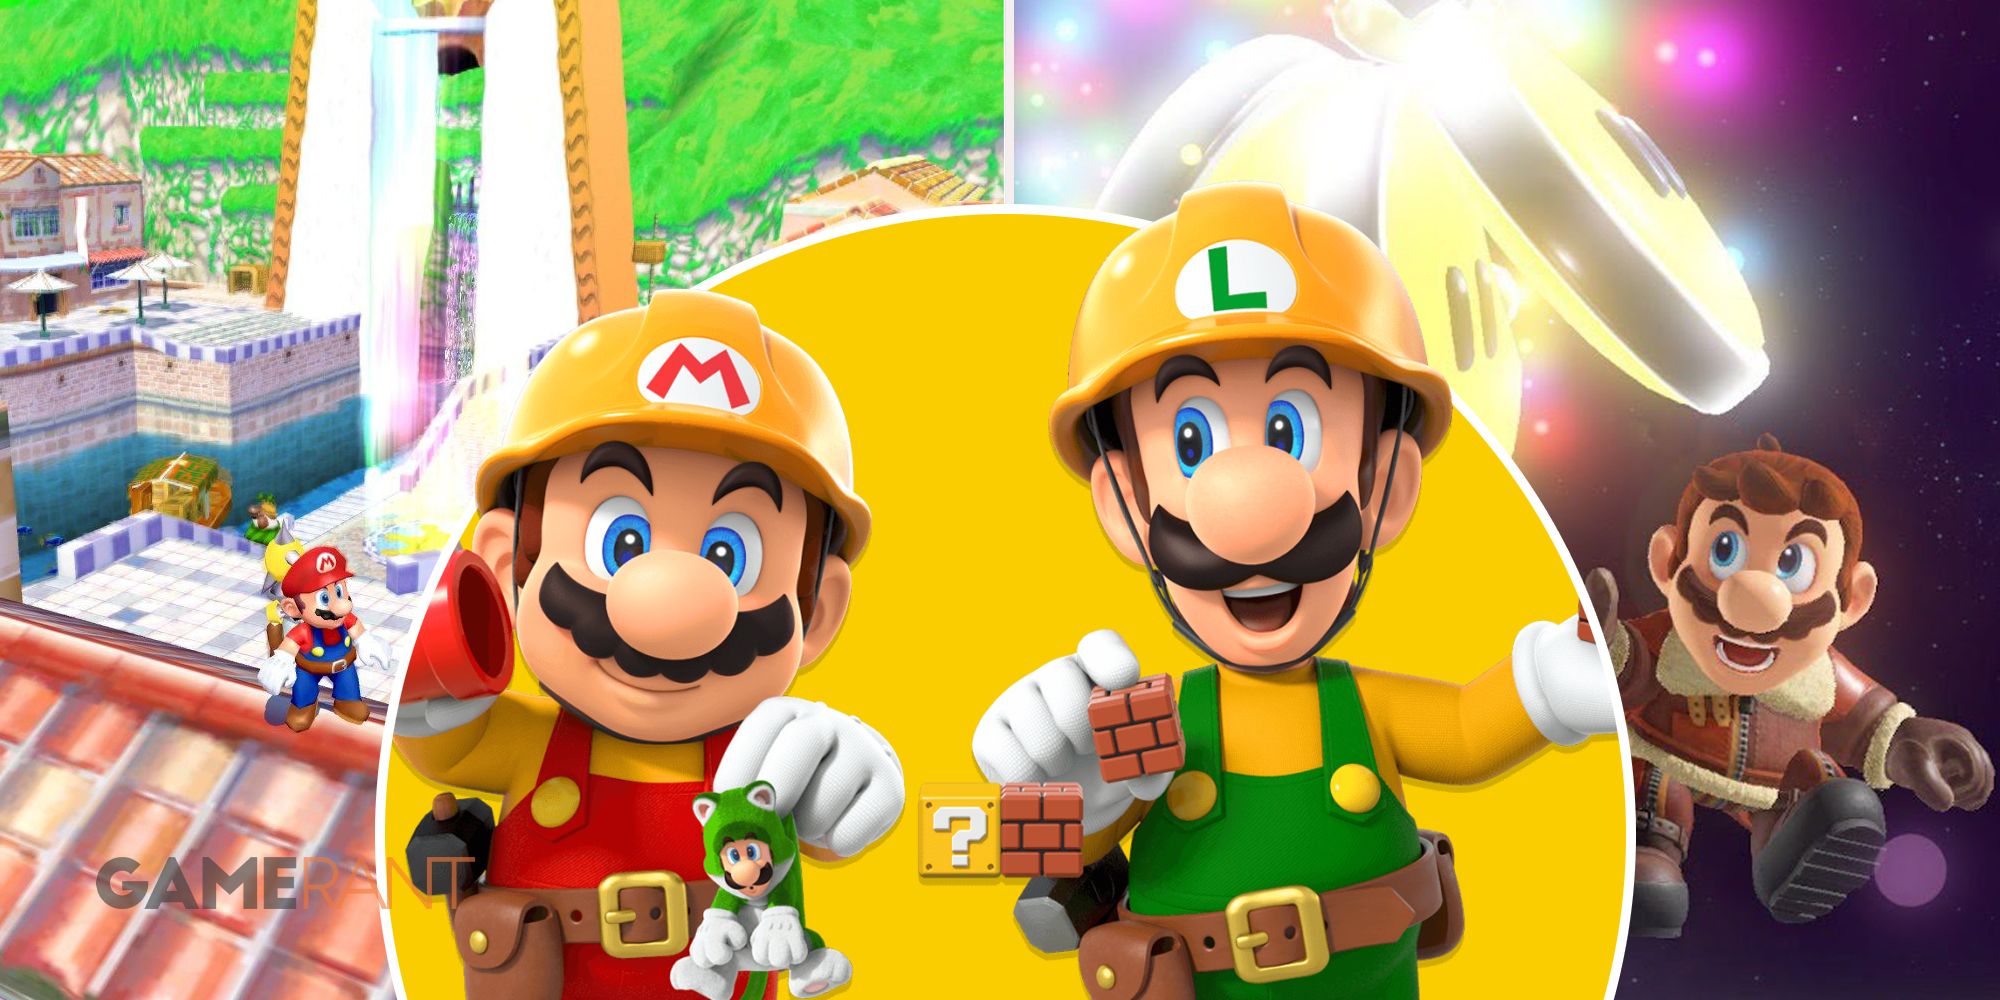 Марио в Delfino Plaza в Super Mario Sunshine слева, Марио и Луиджи в Super Mario Maker 2 посередине, Марио получает мульти-мун в Super Mario Odyssey справа